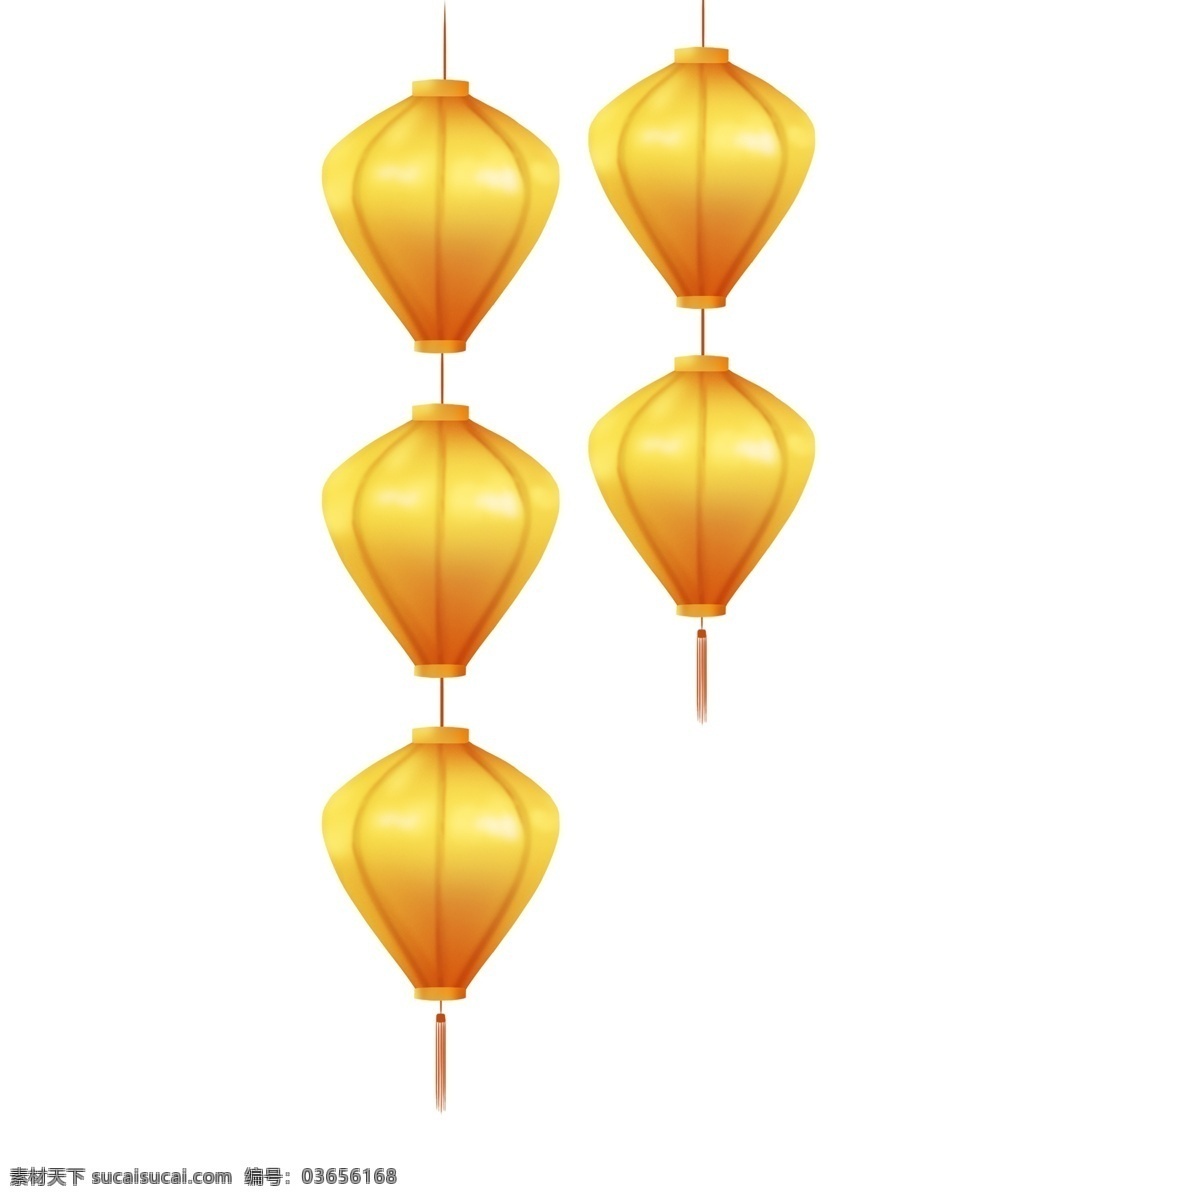 手绘 黄色 灯笼 插画 黄色的灯笼 漂亮的灯笼 卡通插画 手绘灯笼插画 新年红灯笼 新年的灯笼